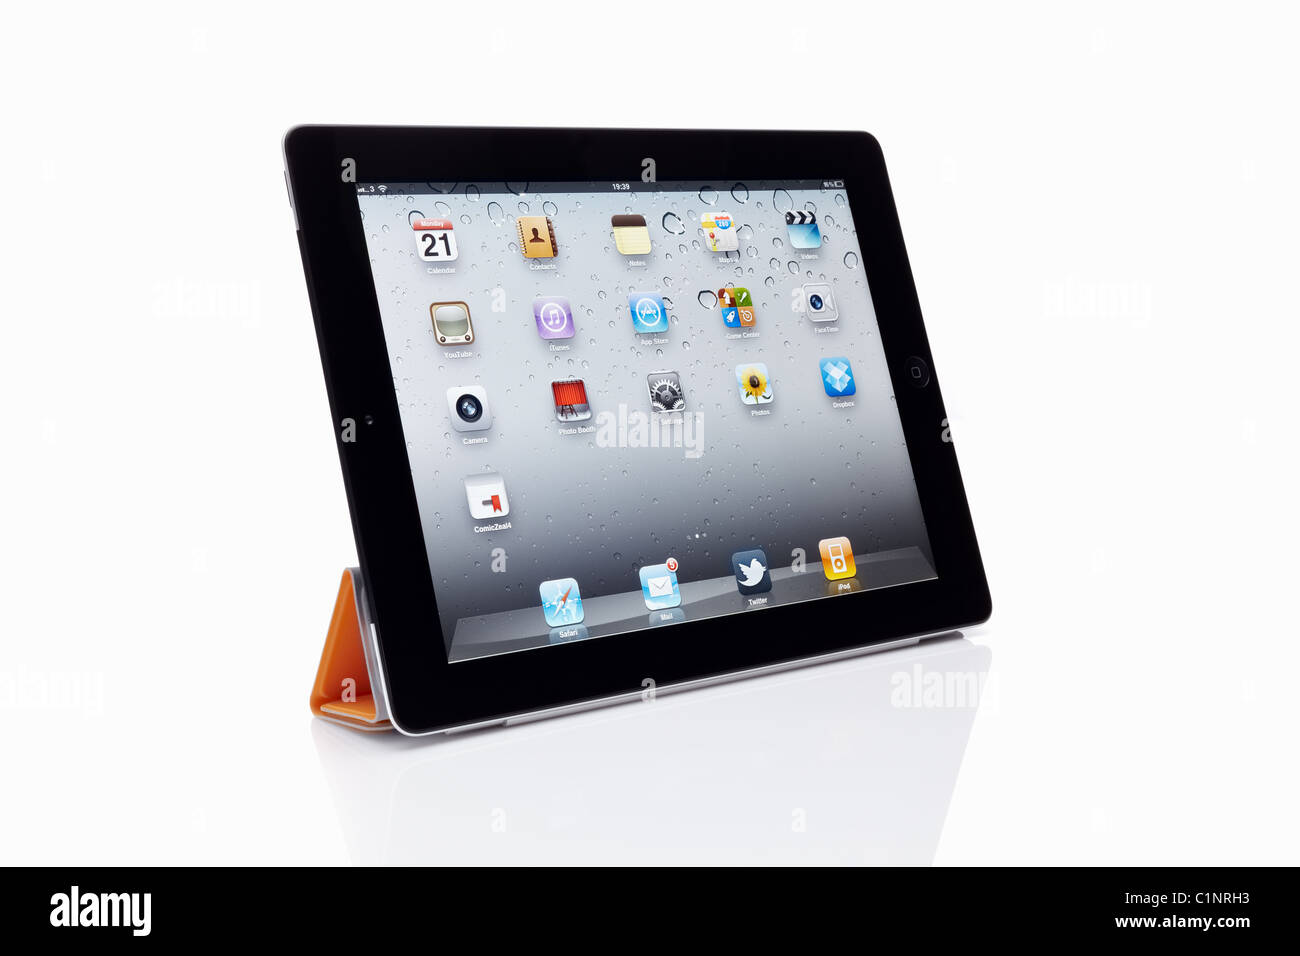 Apple Ipad 2 Mit Smart Cover Ausschneiden Auf Weissem Hintergrund Mit Reflexion Und Beschneidungspfade Stockfotografie Alamy